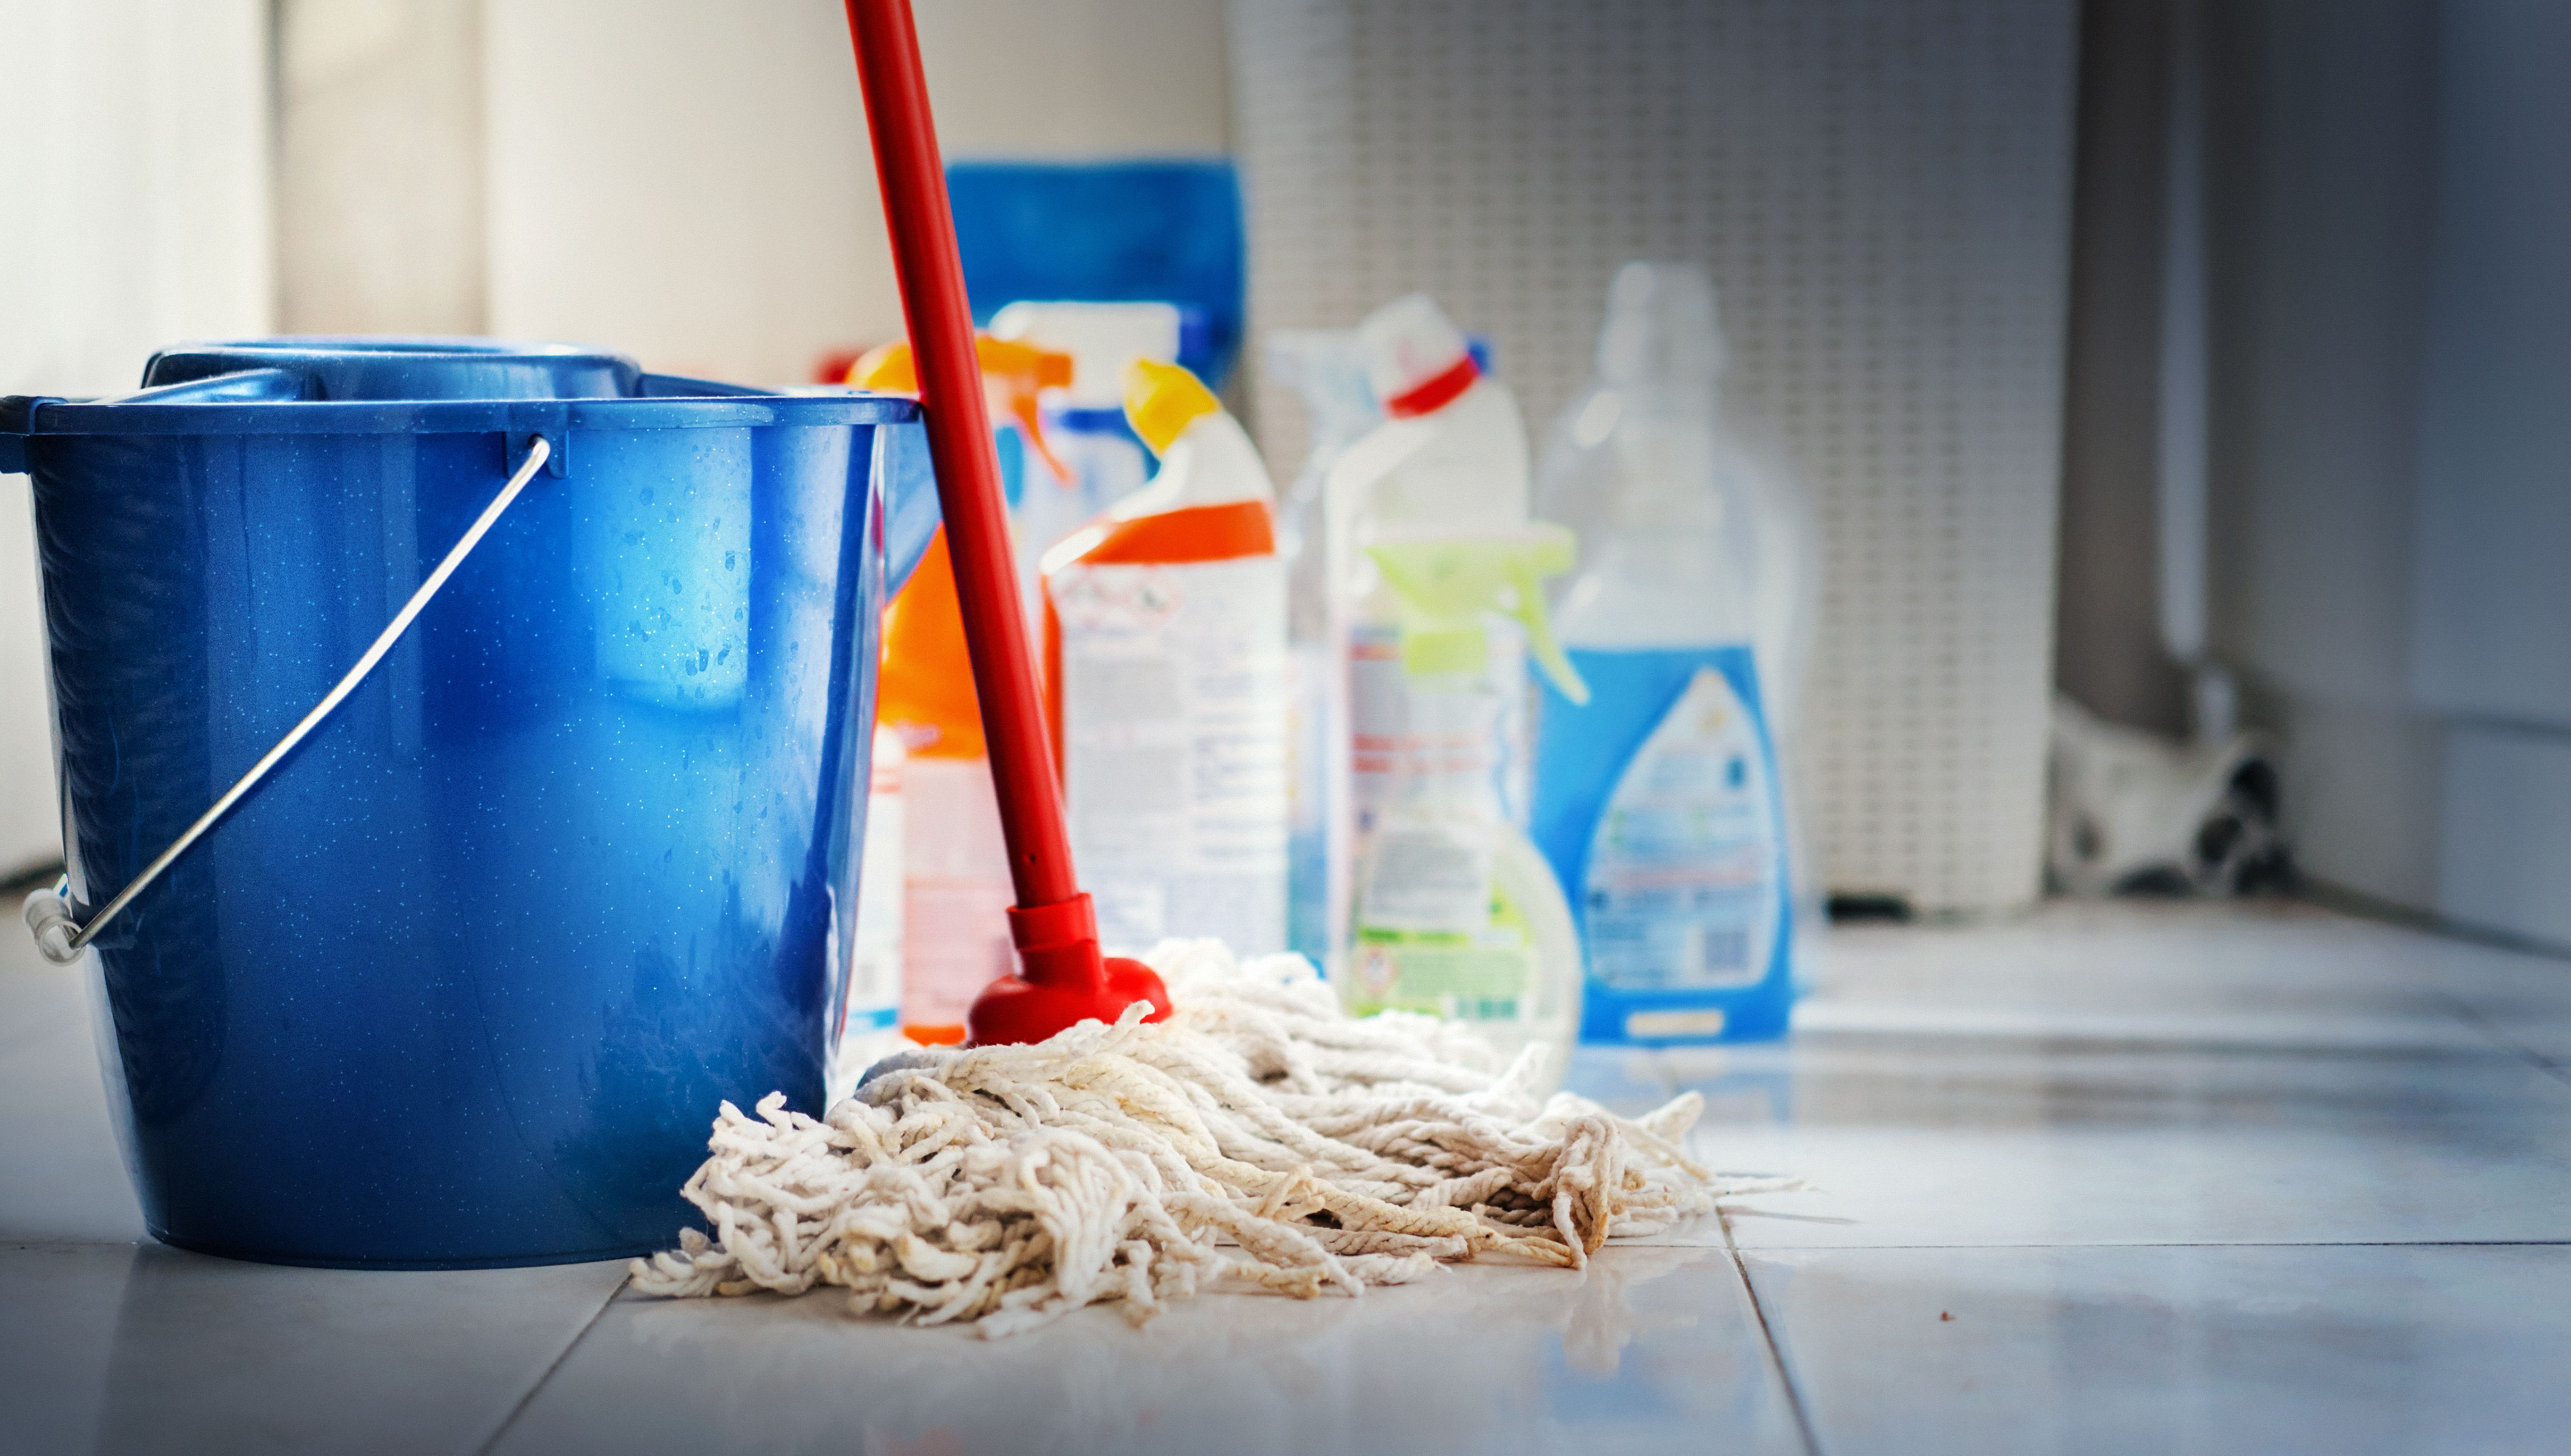 Foto 29 de Empresas de limpieza en Madrid | Carlimp